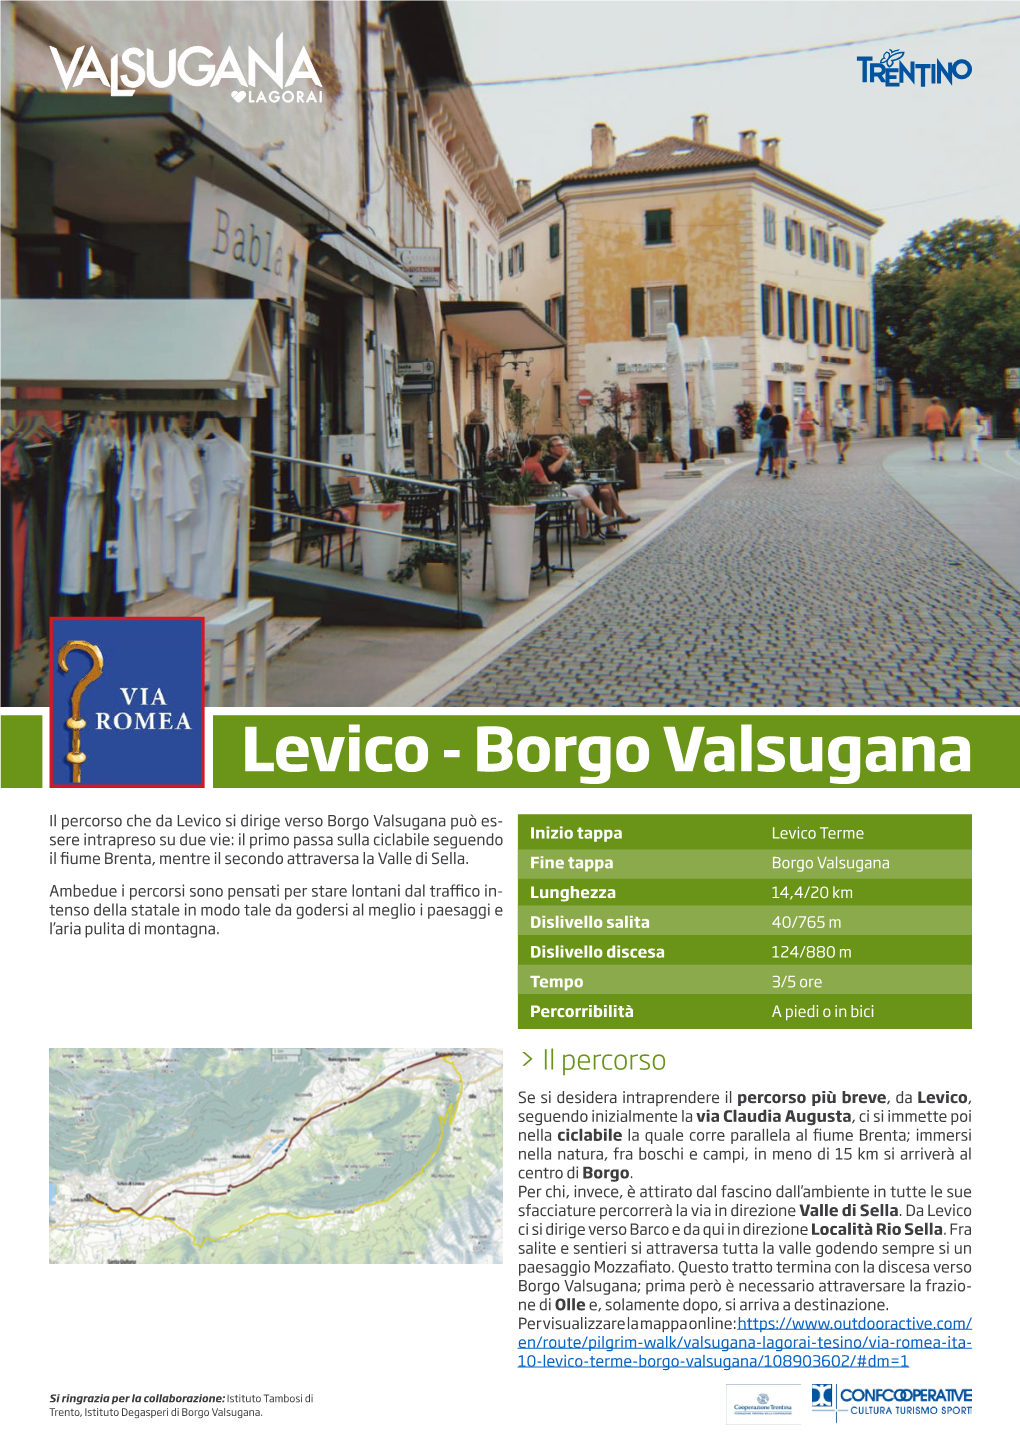 Levico - Borgo Valsugana